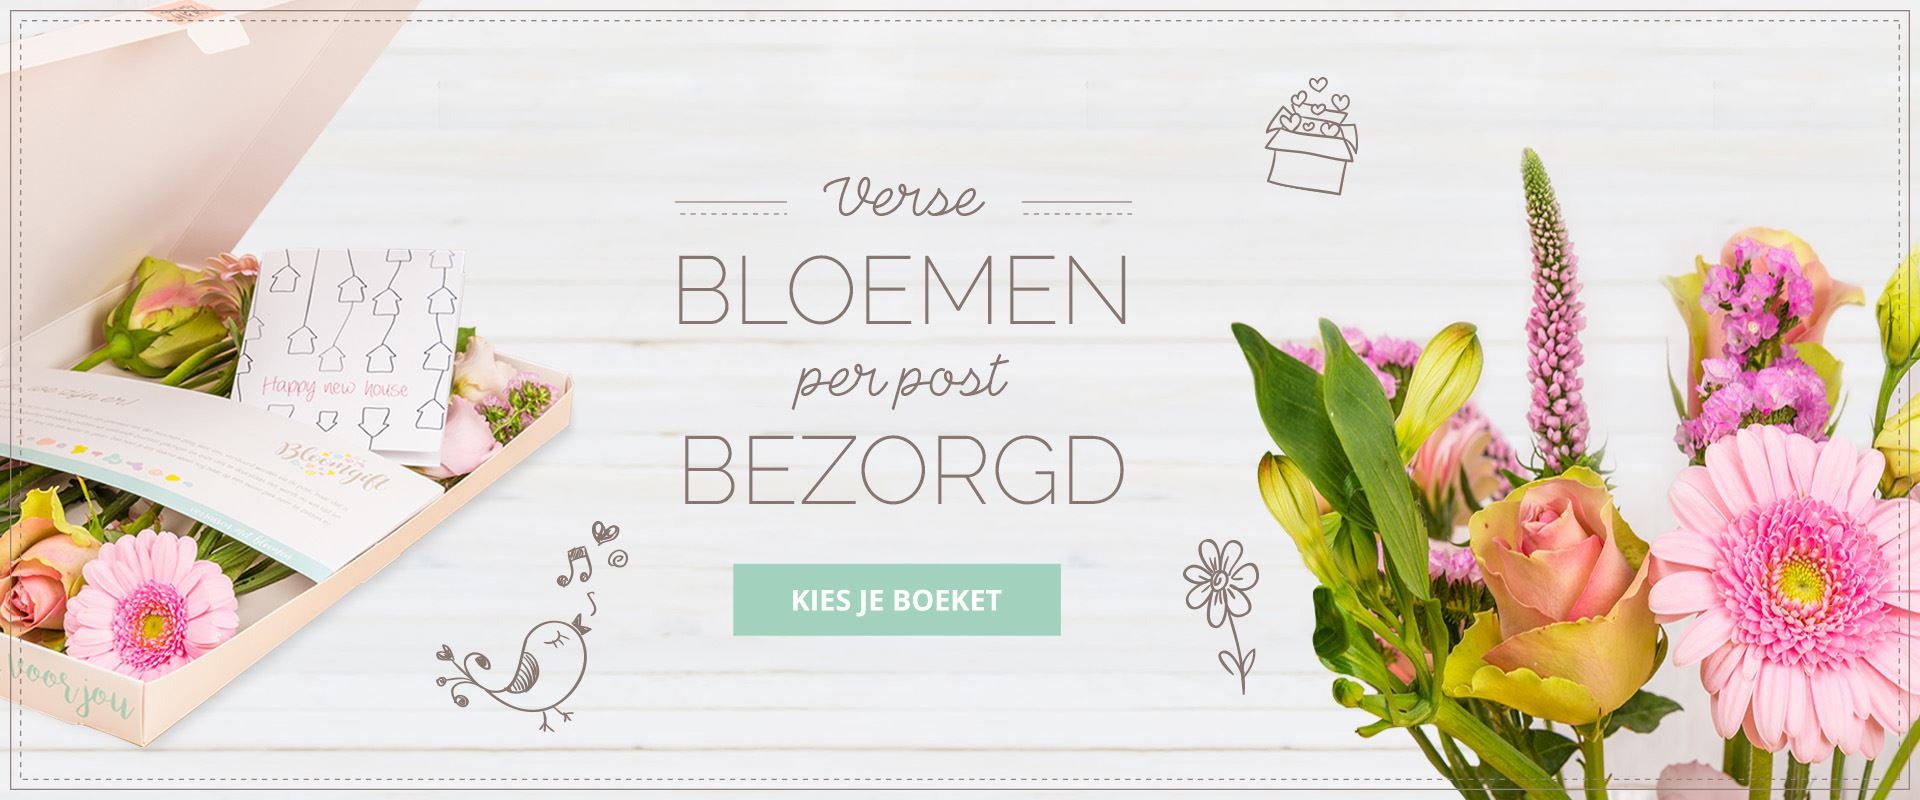 Brievenbusbloemen Verse bloemen per Post Bloomgift